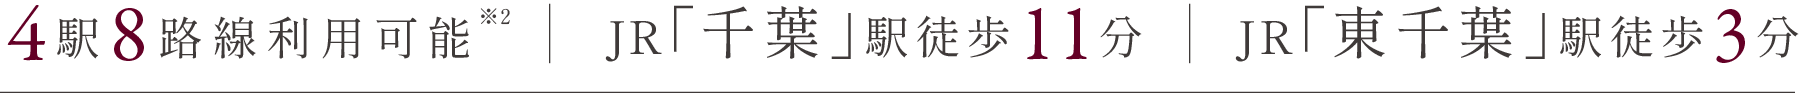 総武線快速・始発駅JR「千葉」駅より「東京」駅直通38分・「船橋」駅直通15分